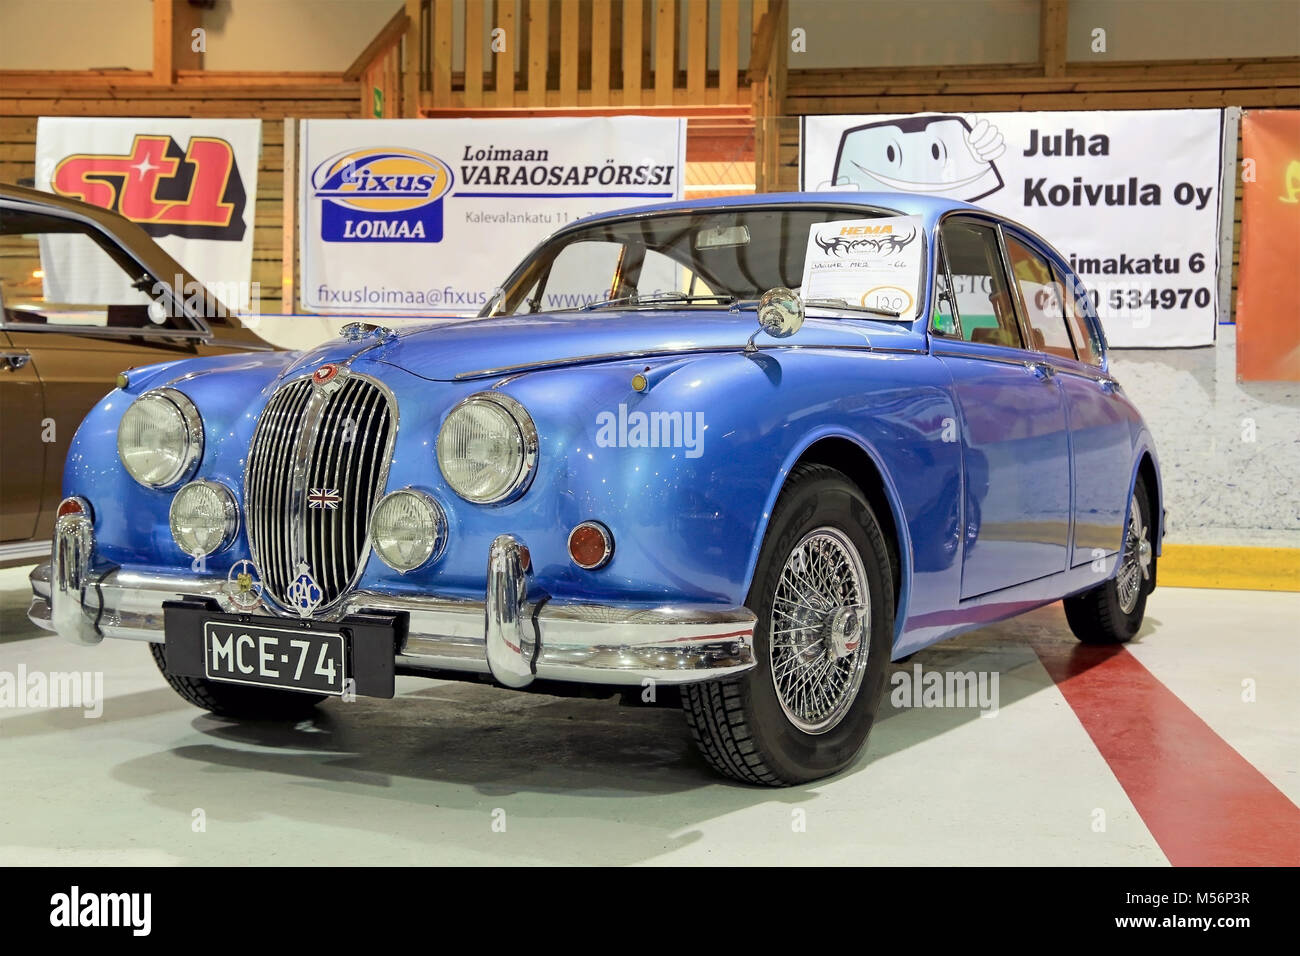 LOIMAA, Finnland - 15. JUNI 2014: Classic blau Jaguar Mk 2 Jahr 1966 bei HeMa Show 2013 in Loimaa, Finnland vorgestellt. Stockfoto